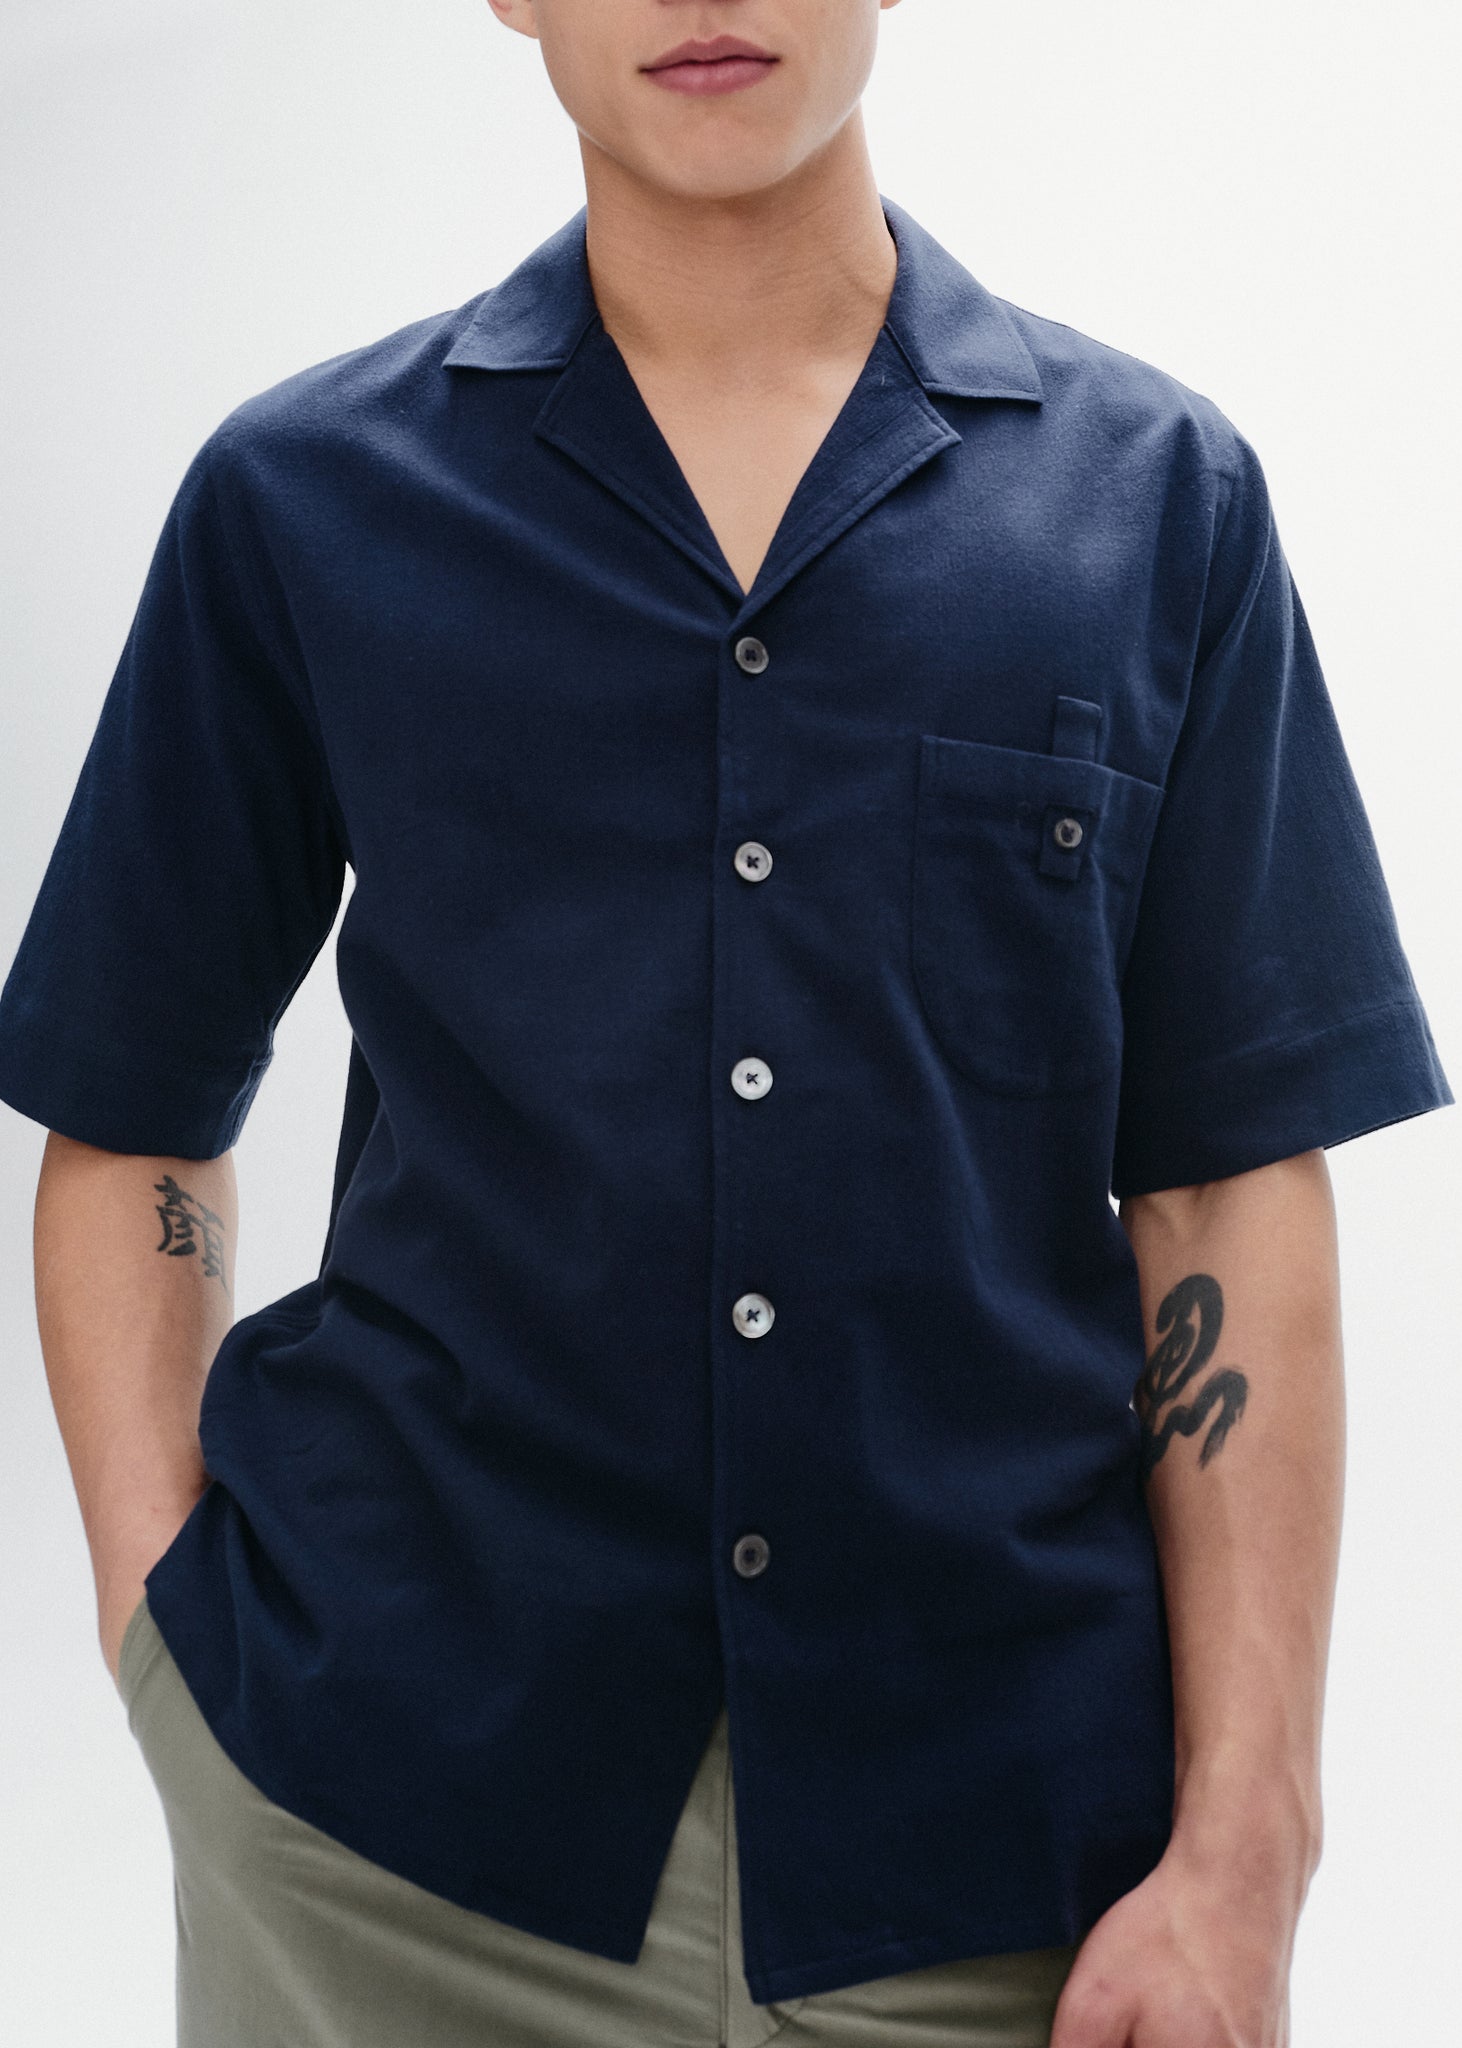 Indigo cotton crepe short sleeve shirt